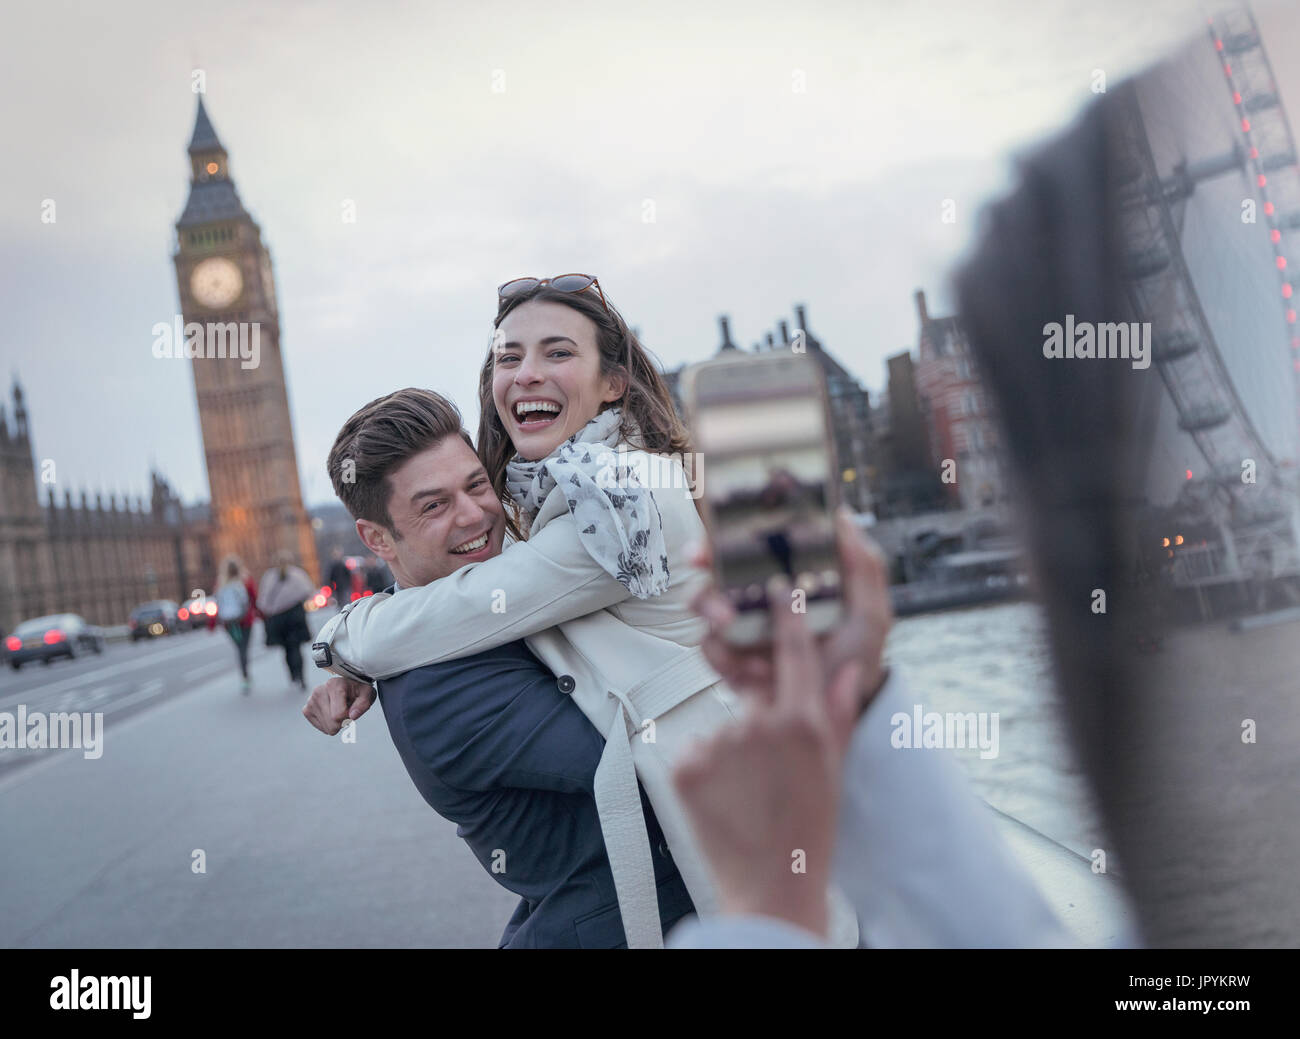 Verspieltes paar Touristen fotografierten auf Brücke in der Nähe von Big Ben, London, UK Stockfoto